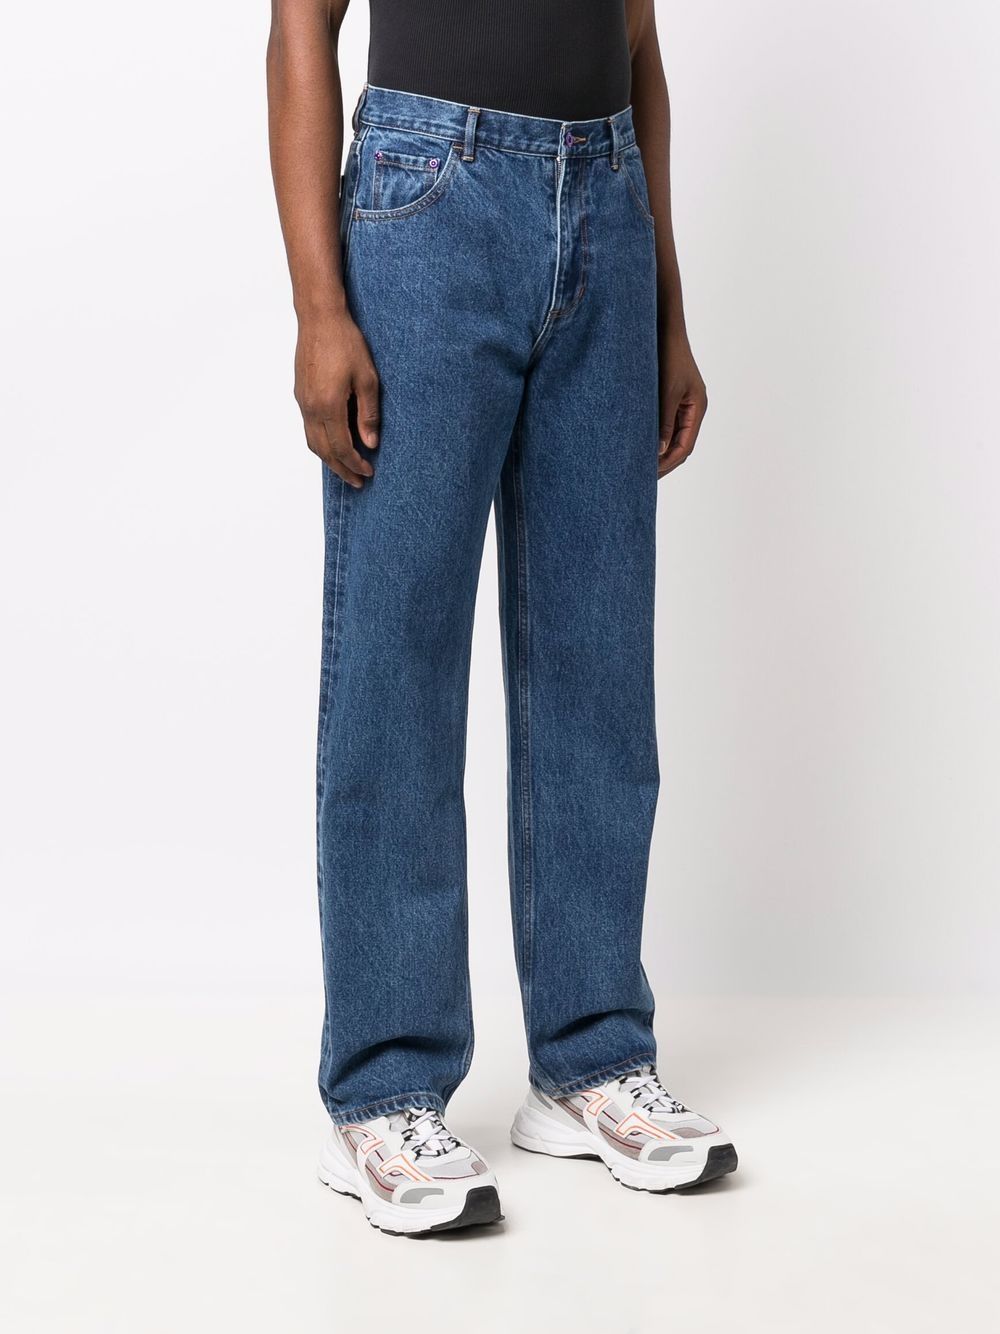 фото Perks and mini прямые джинсы с эффектом потертости